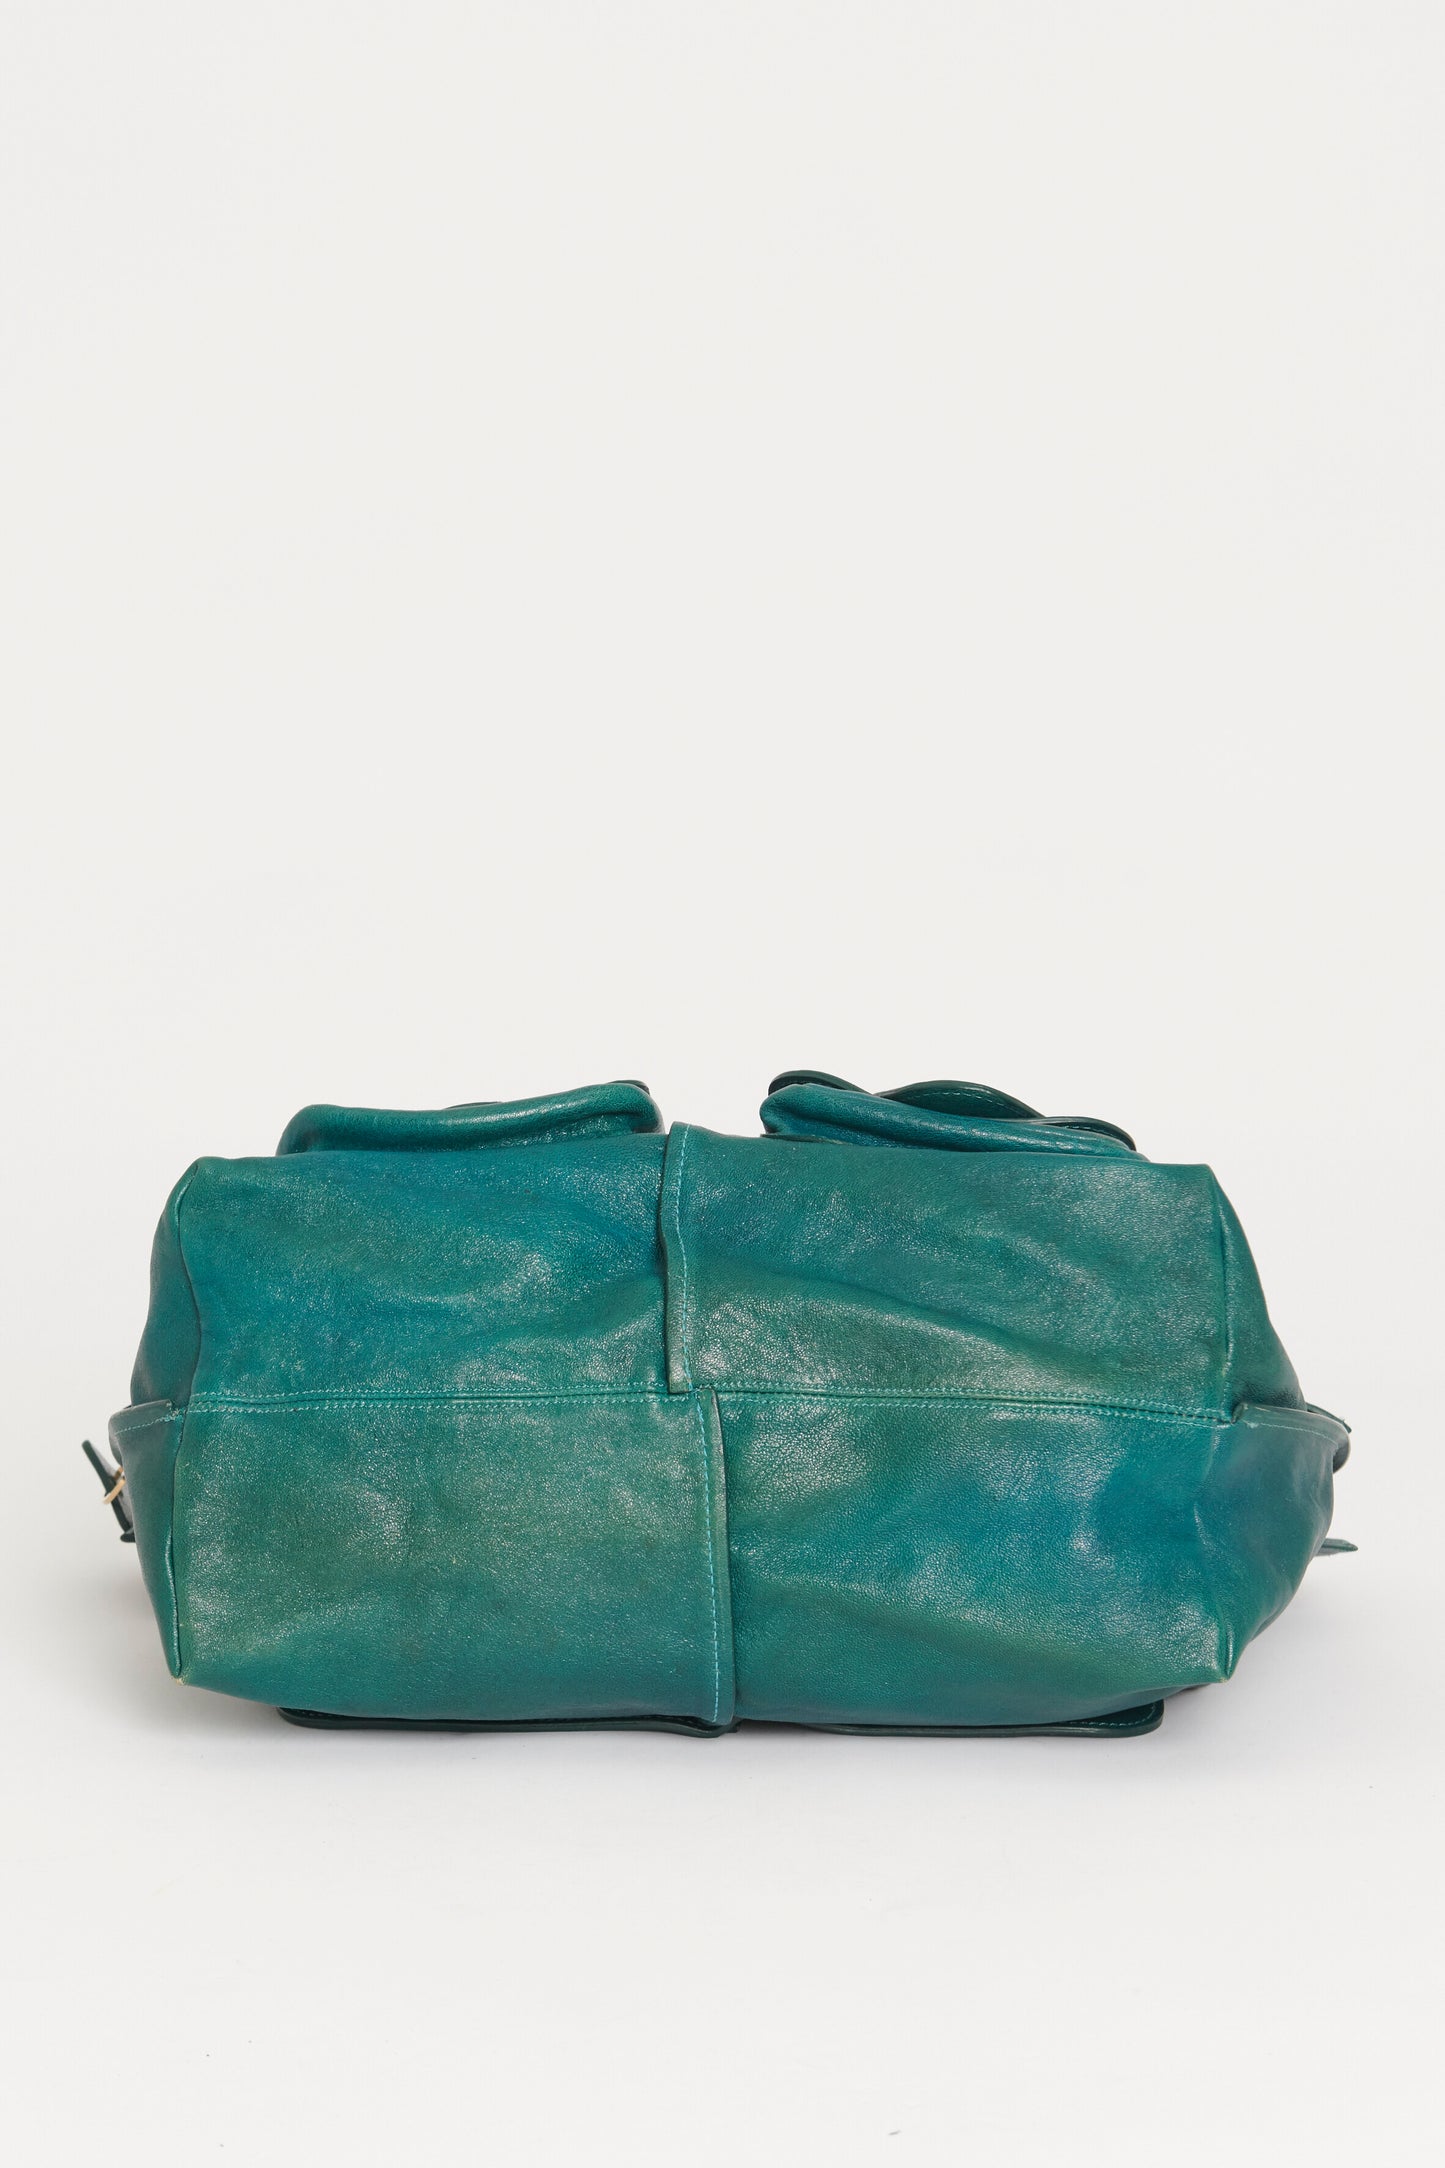 Teal Leather Front Pocket Large Preowned Shoulder Bag